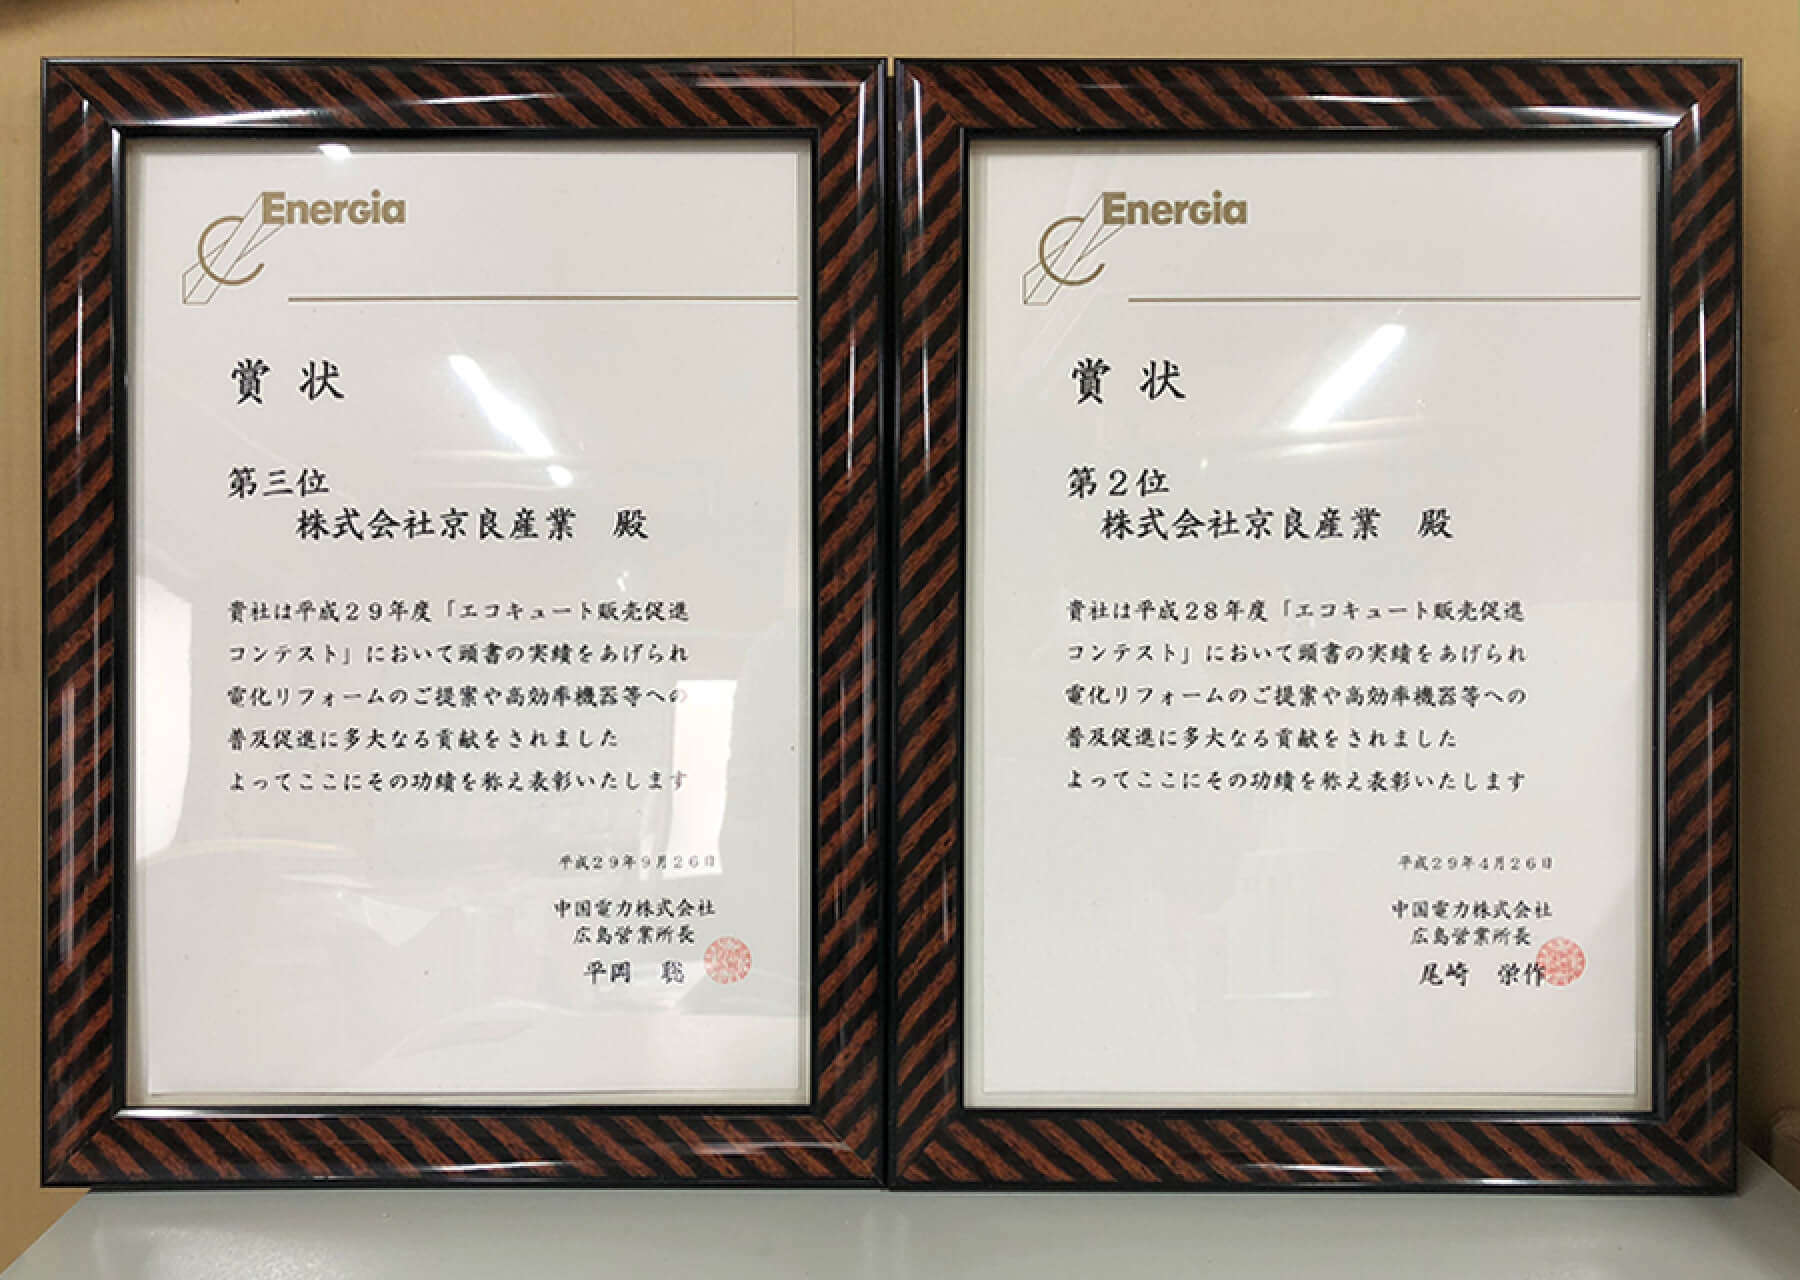 中国電力（株）及び（株）エネルギア・ソリューション・アンド・サービス様から毎年数々の賞状を頂いております。